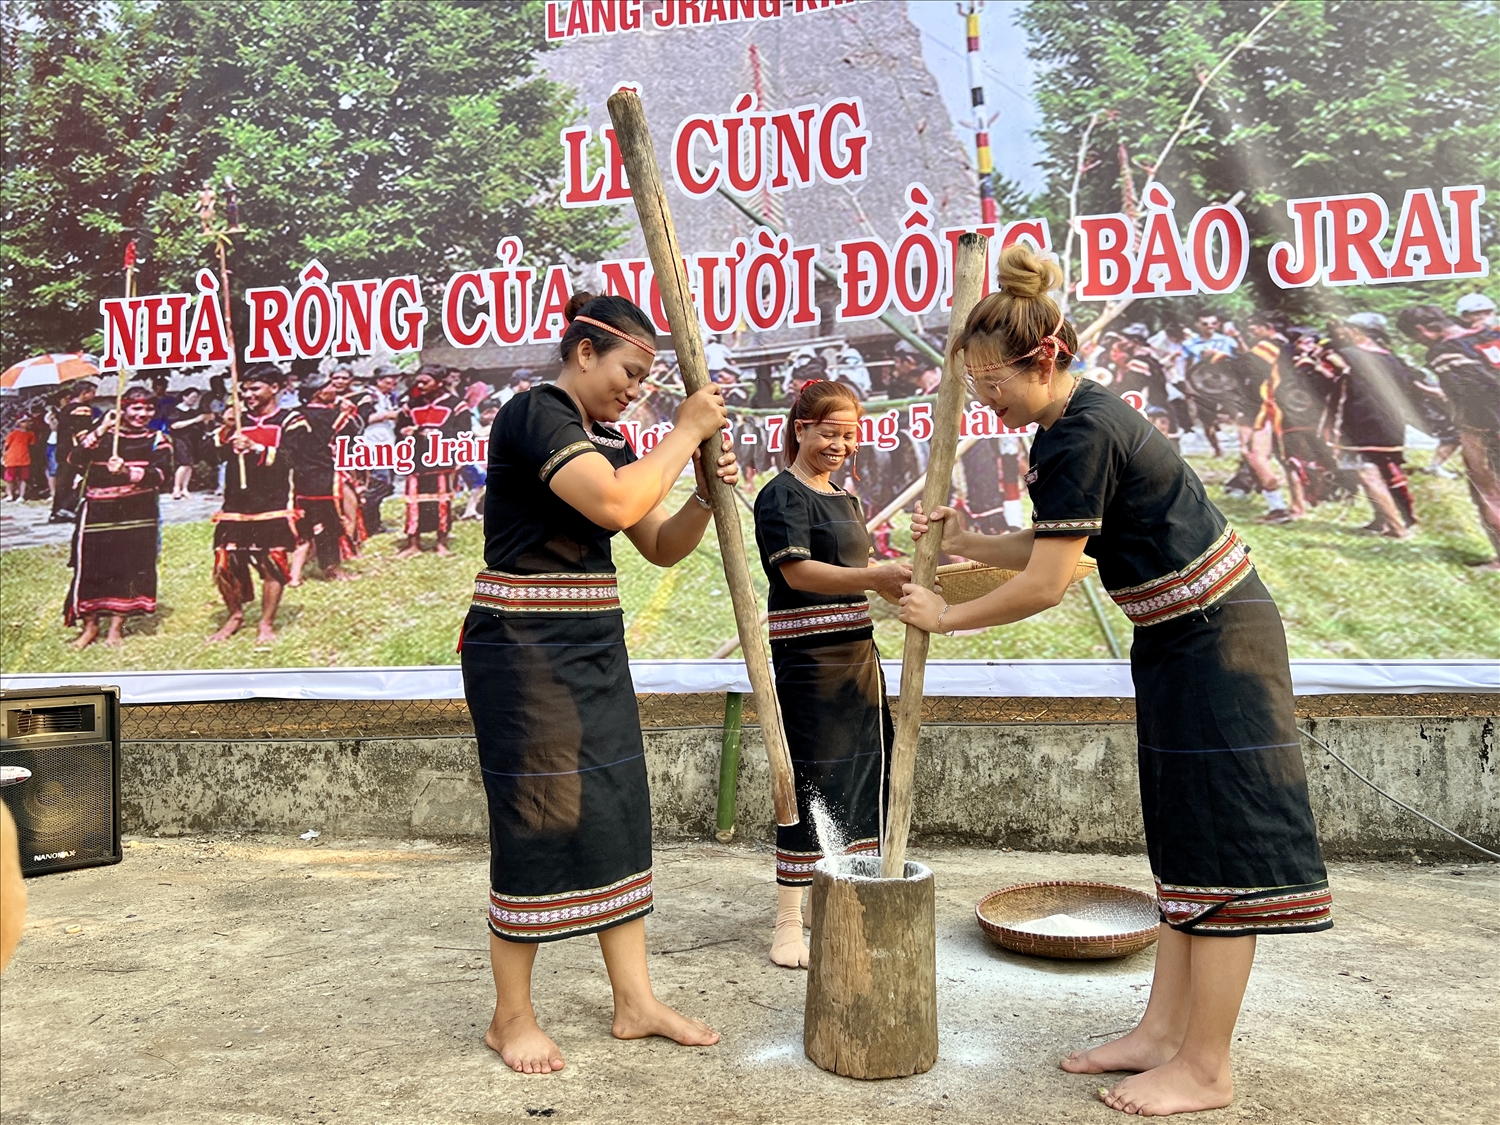 Các cô gái Gia Rai đảm nhiệm phần giã gạo trong nghi lễ truyền thống Cúng nhà rông